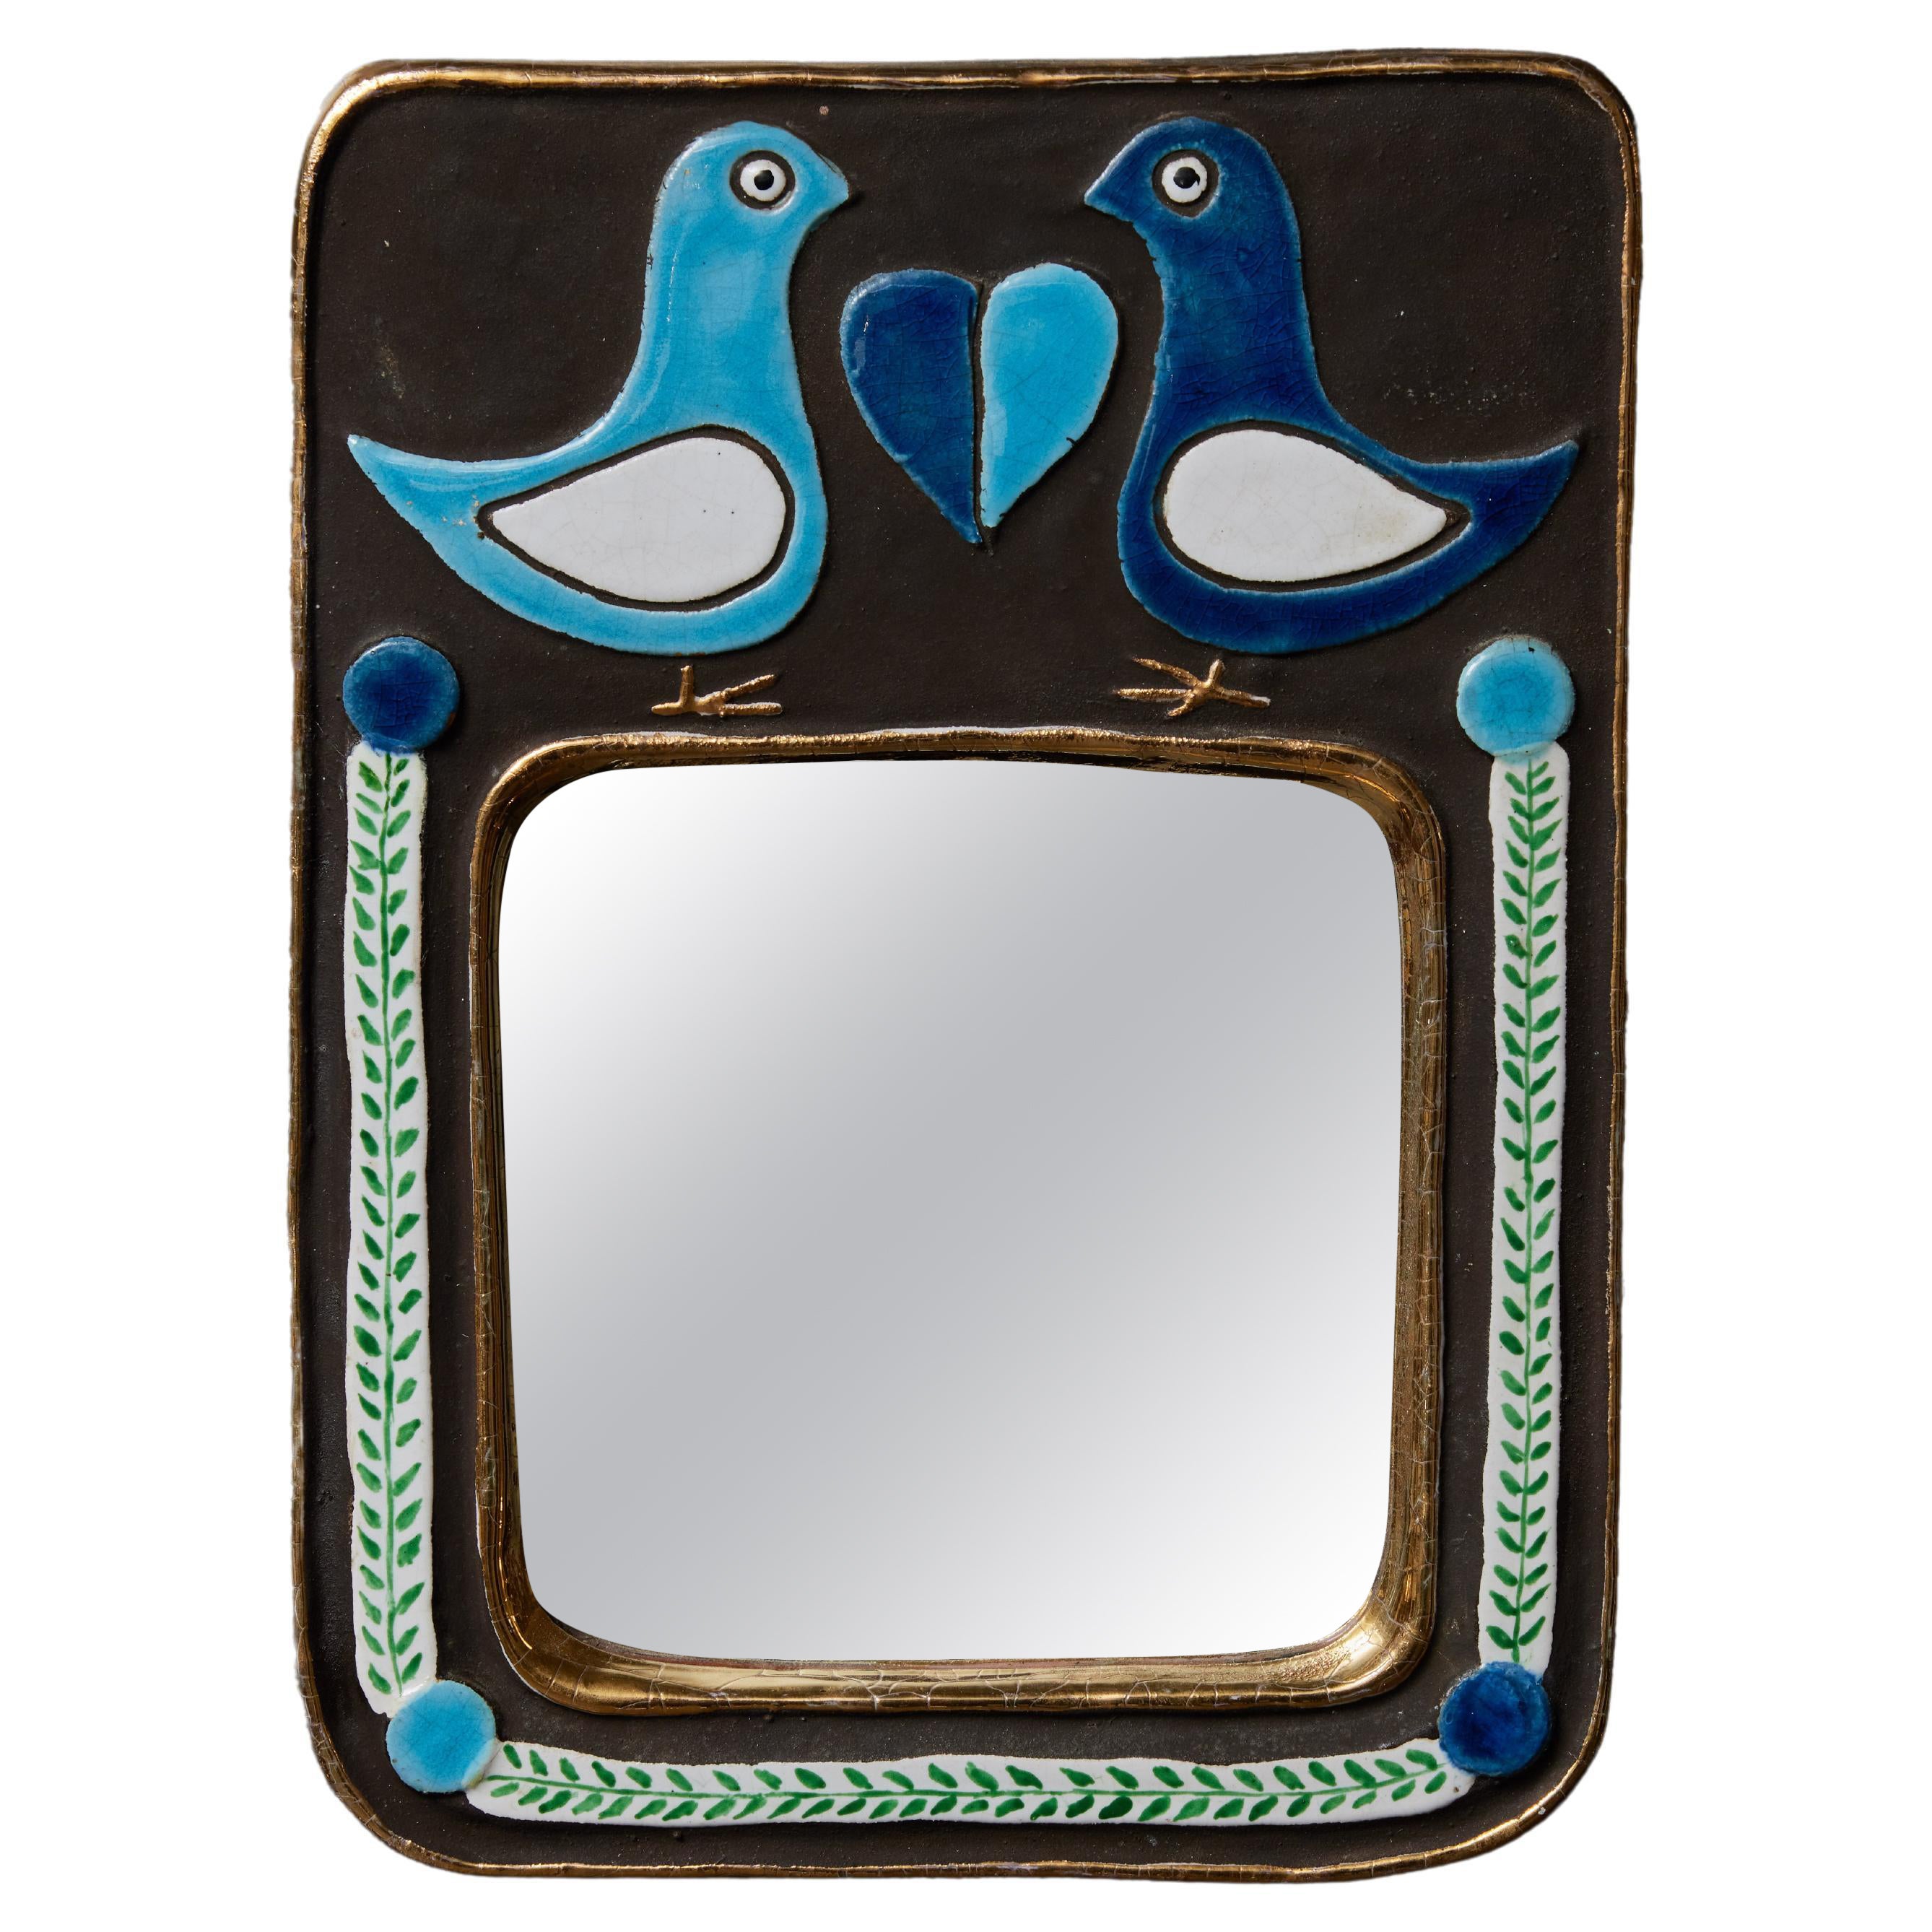 Mithe Espelt Blauer Spiegel mit Vögeln Dekors